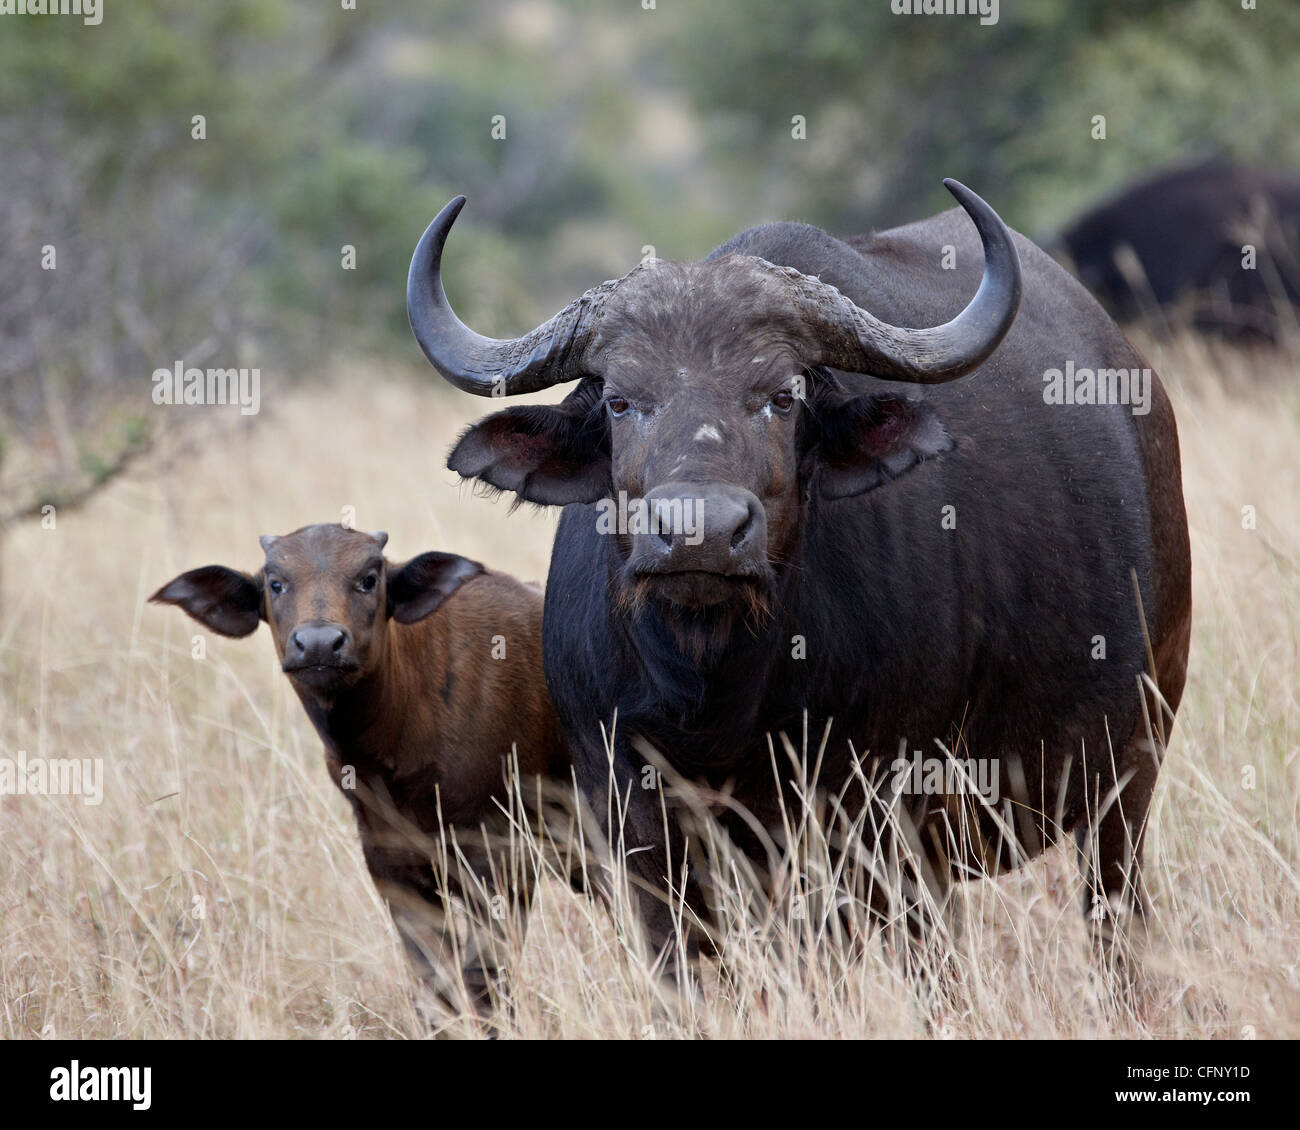 Cape buffalo (búfalo africano (Syncerus caffer)) vaca y ternera, el Parque Nacional Kruger, Sudáfrica, África Foto de stock